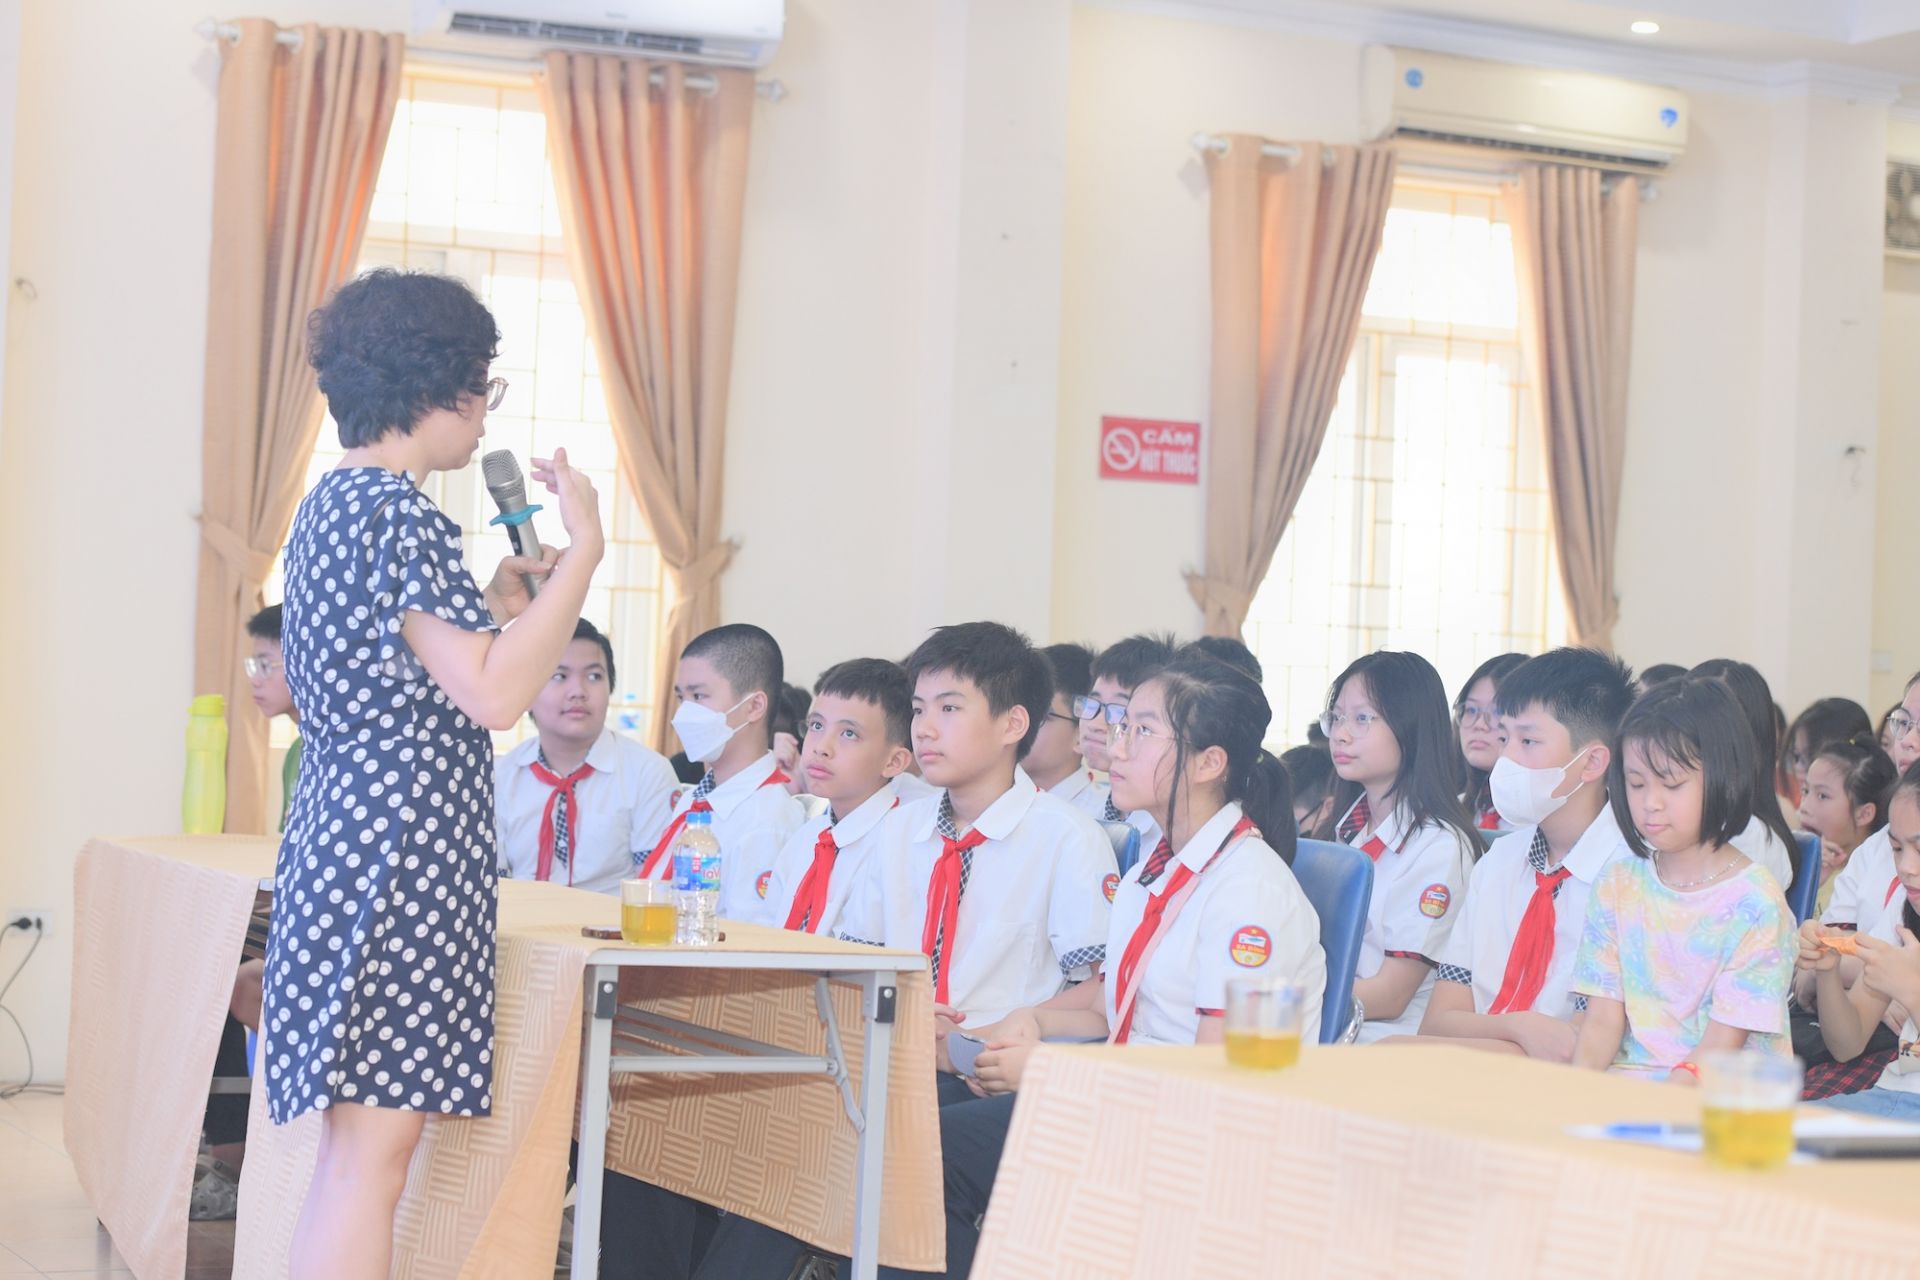 Chương trình có sự tham dự của 150 bạn học sinh trên địa bàn phường Ngọc Hà.